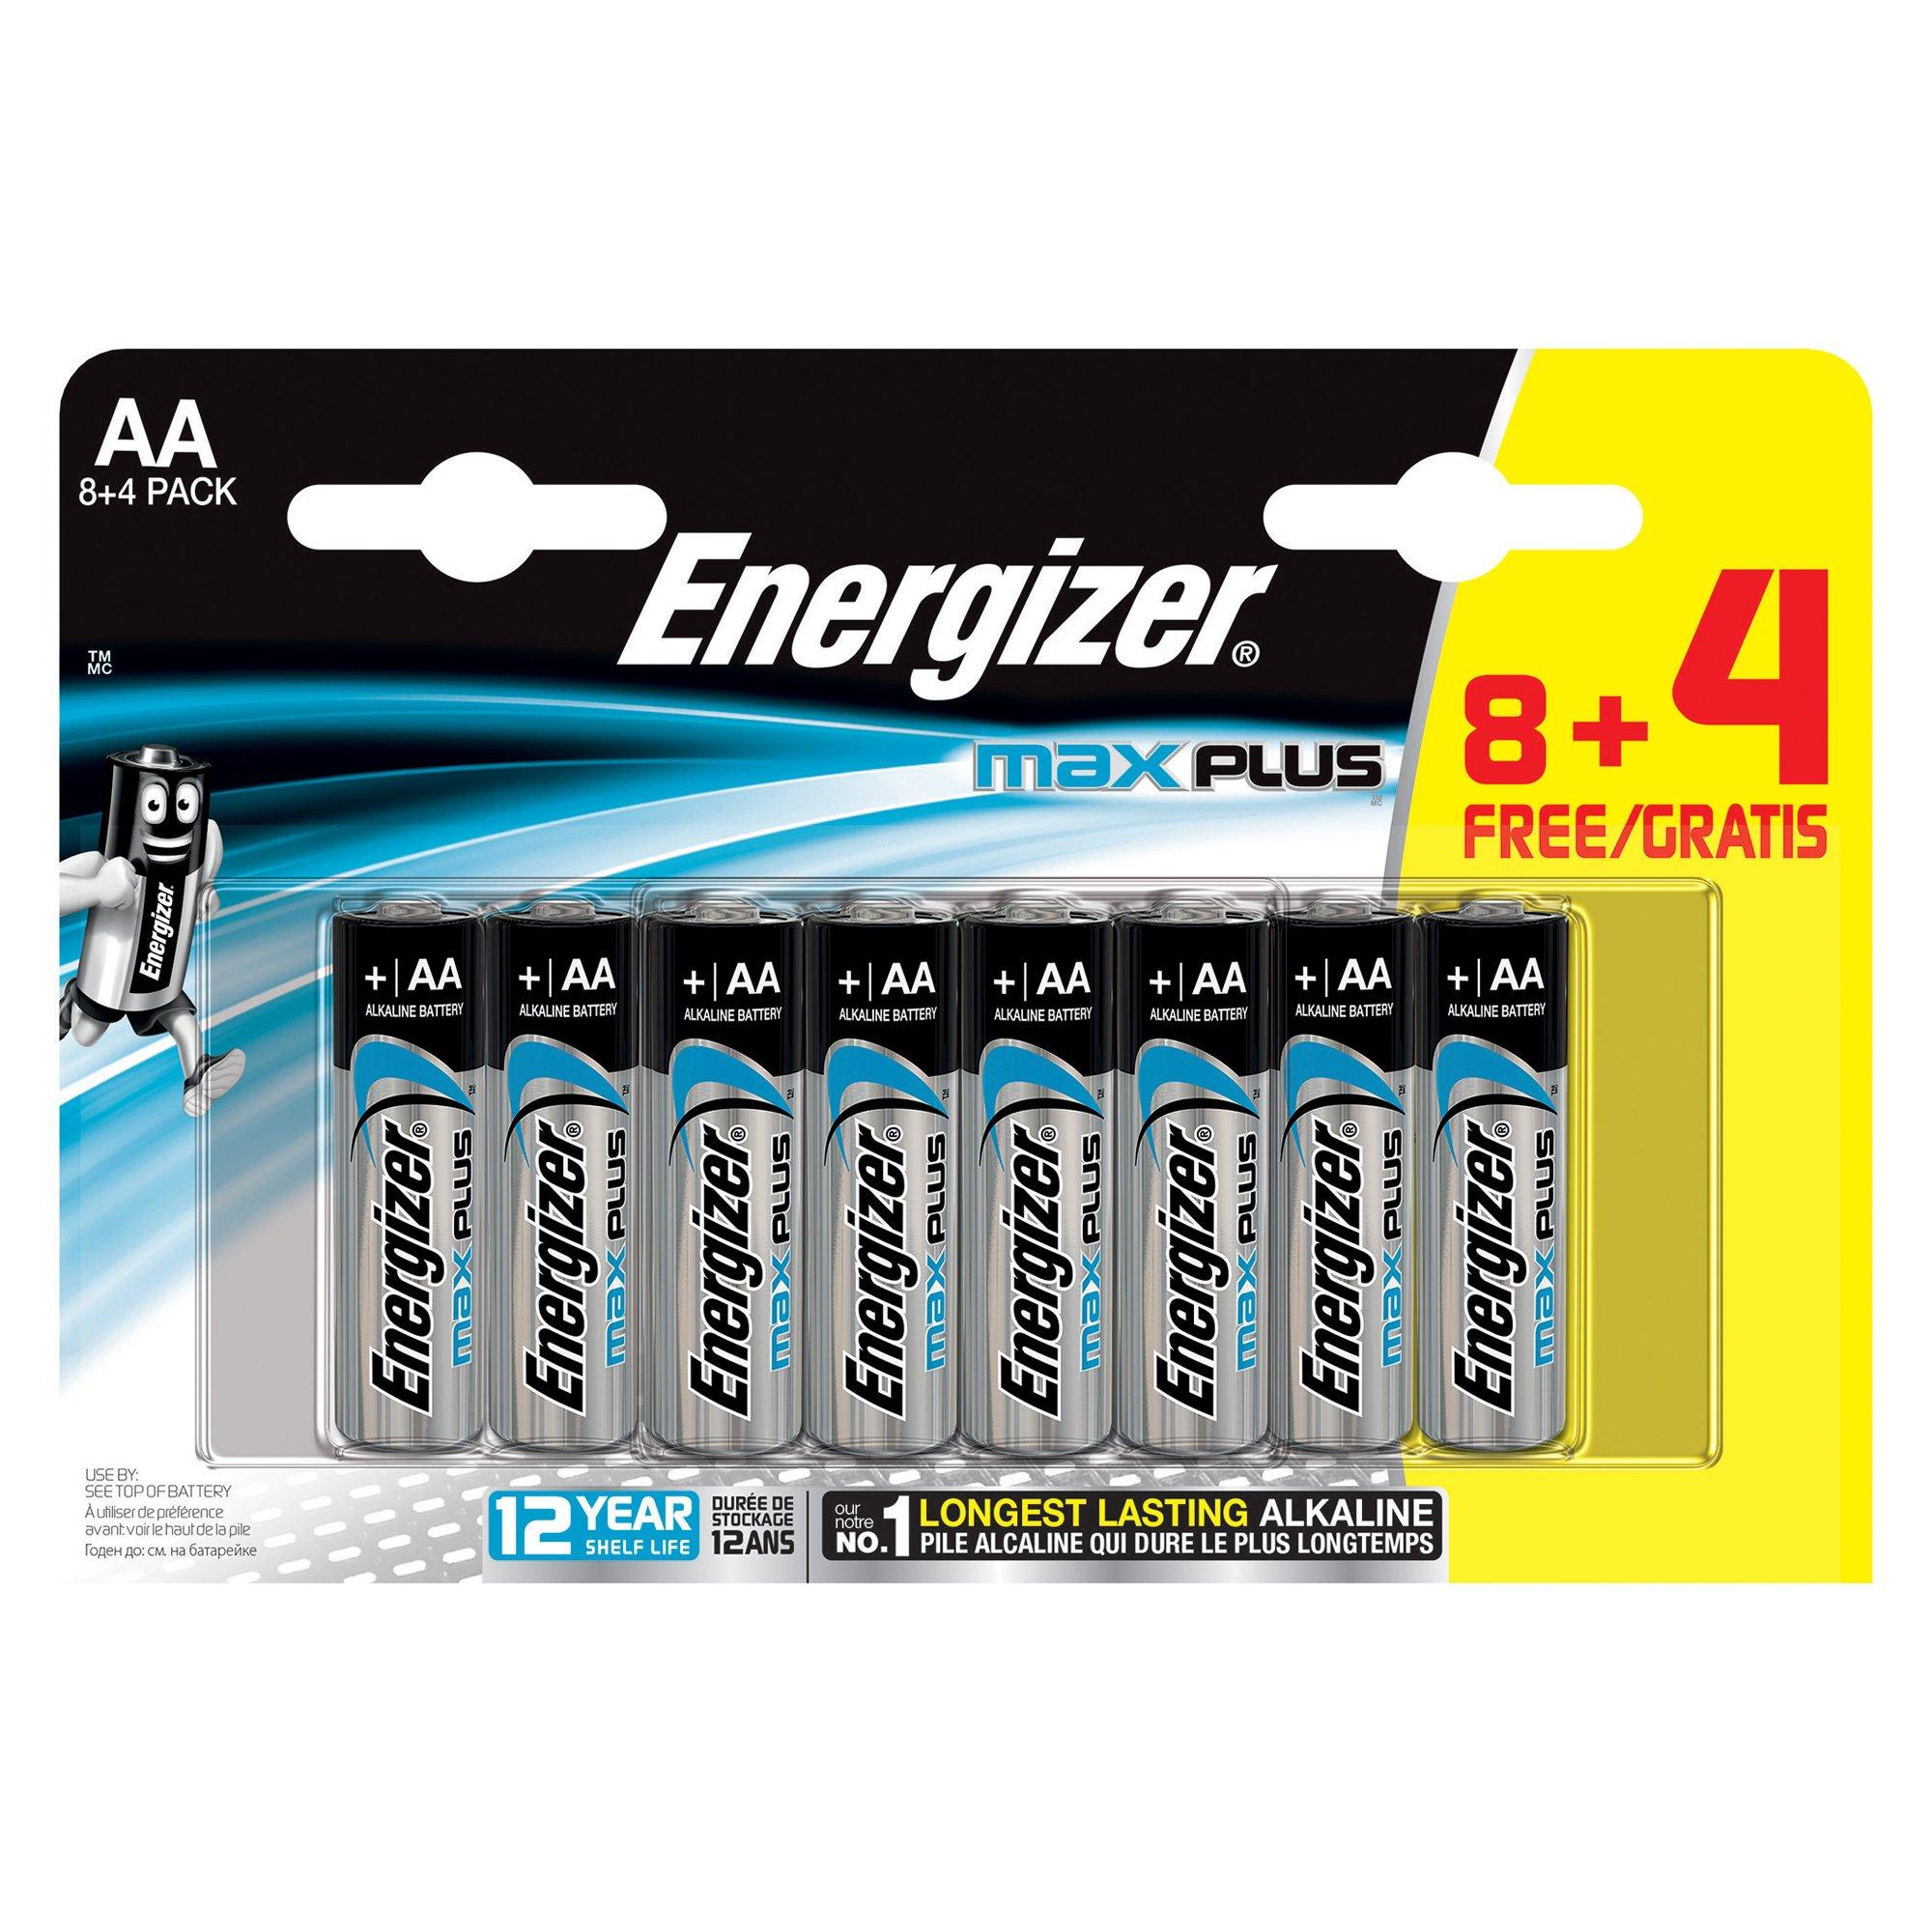 Energizer Max Plus (AA) Batterie alcaline, 8+4 pezzi 